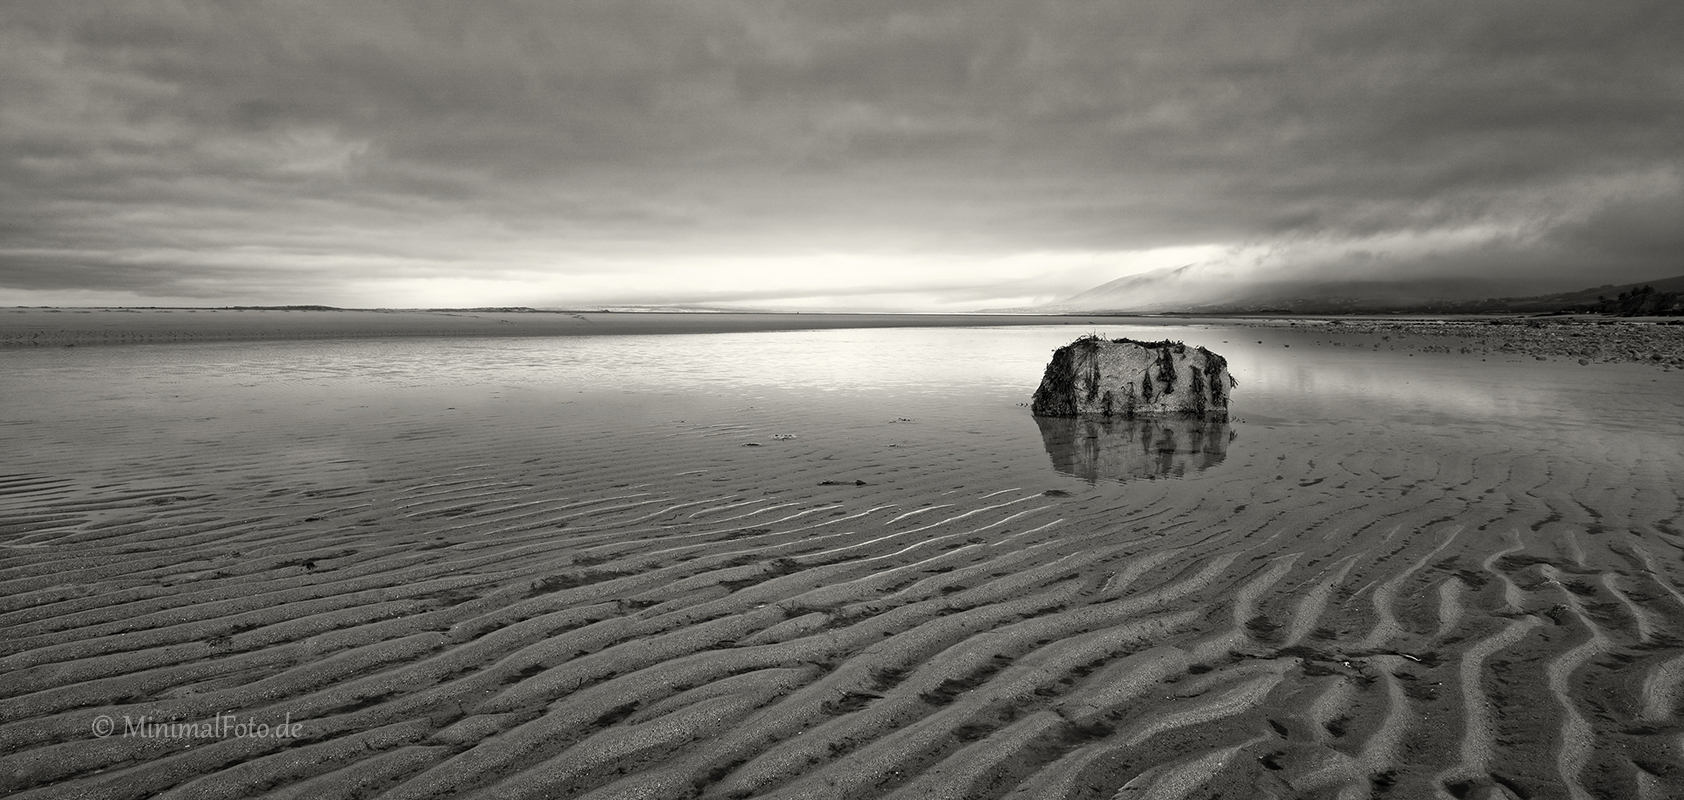 Fels-rock-stein-stone-Sand-ripple-rippen-strukturen-kueste-coast-Landschaft-landscape-Minimalismus-minimalistisch-minimalistic-black-white-schwarz-weiss-Irland-A-Sony_DSC2468a-sw